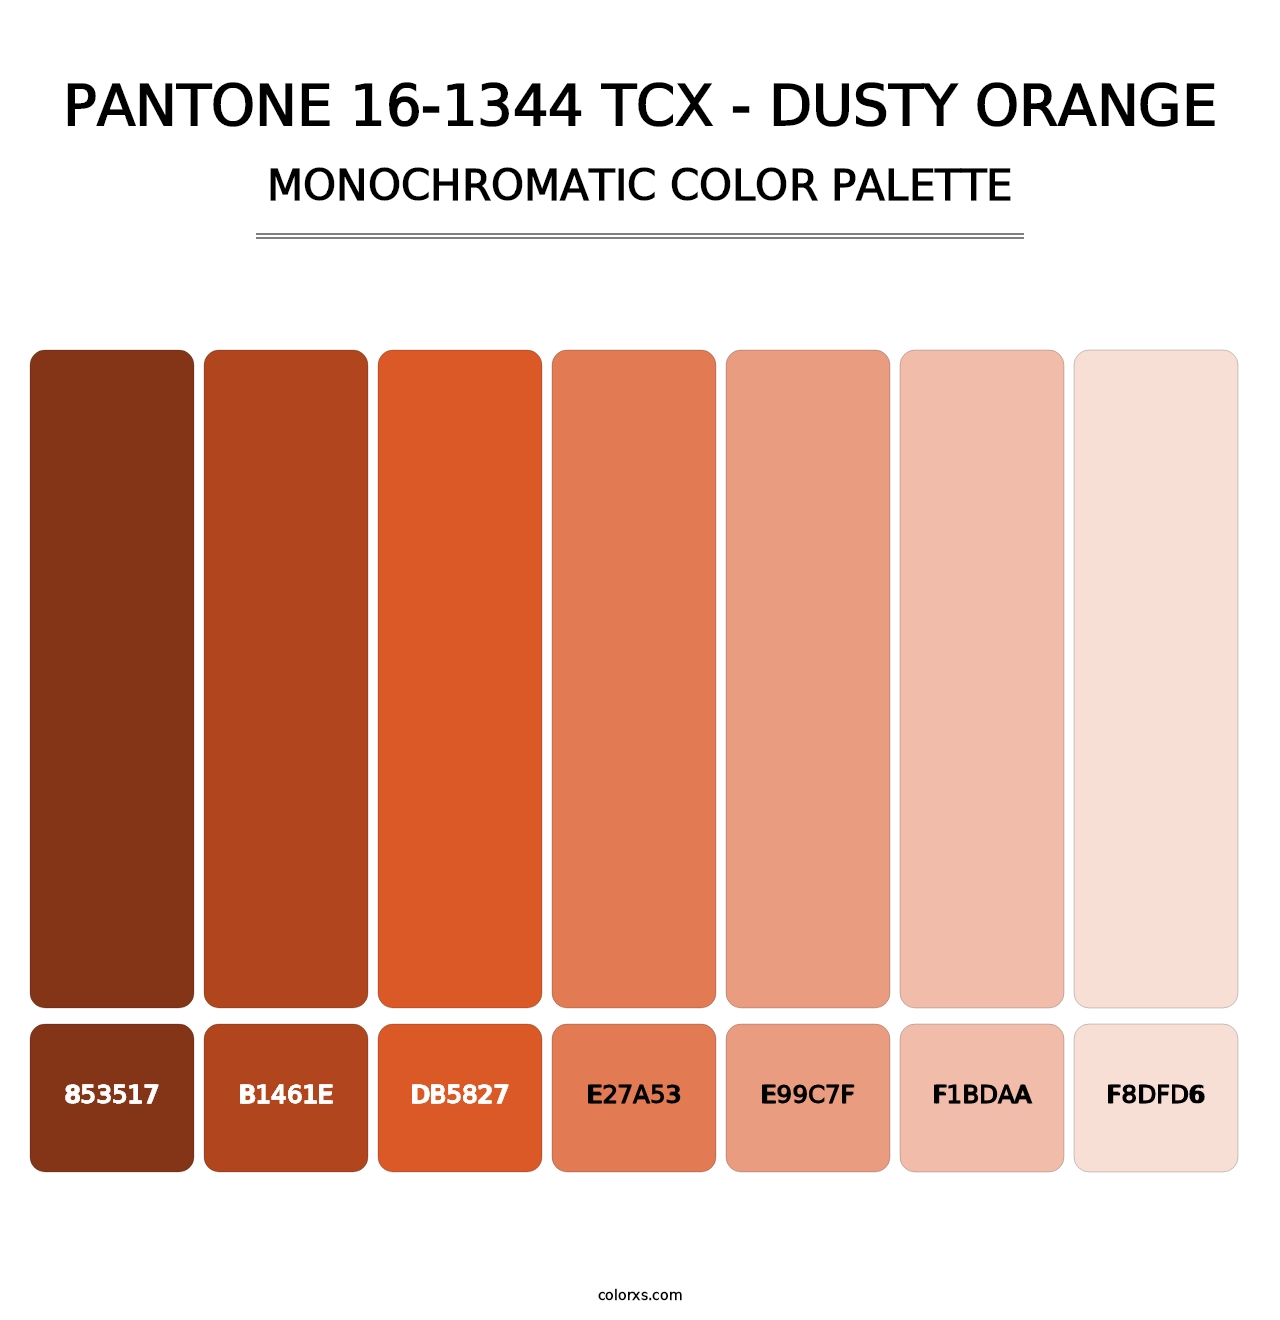 PANTONE 16-1344 TCX - Dusty Orange - Monochromatic Color Palette